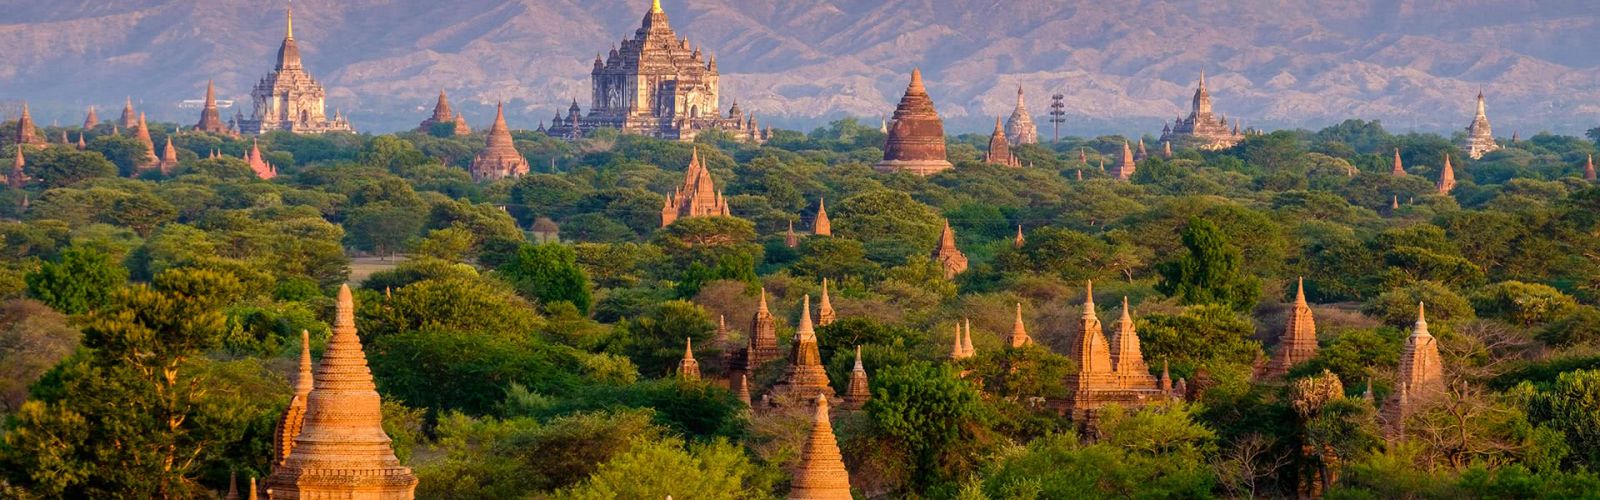 Мьянма Индокитайские туры